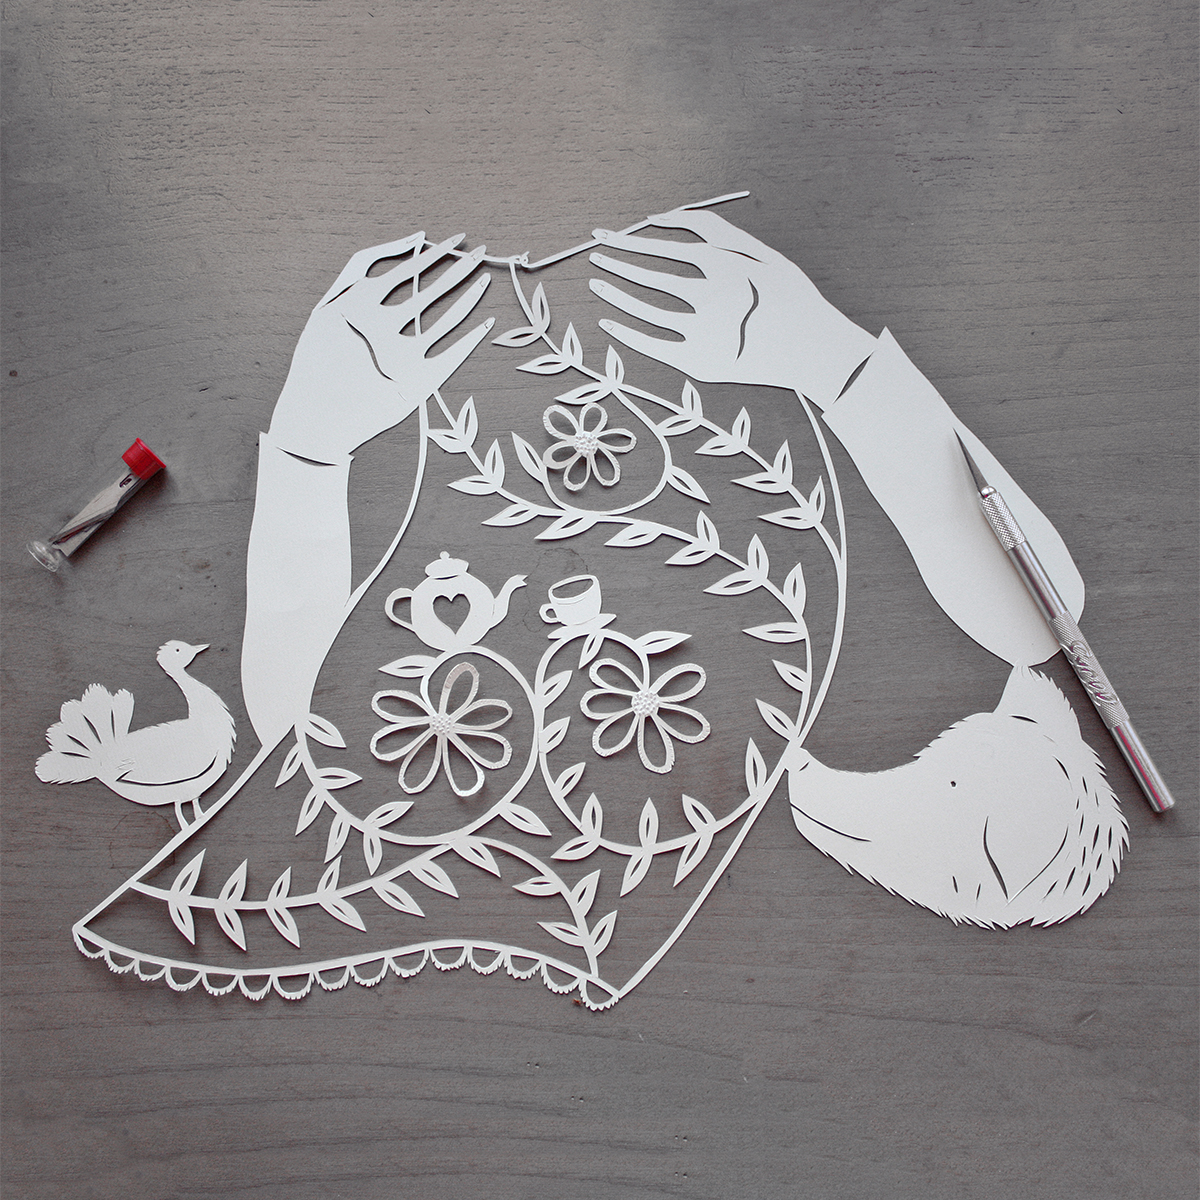 Ilustração em papercut de mãos a fazer crochet com pomba e cão